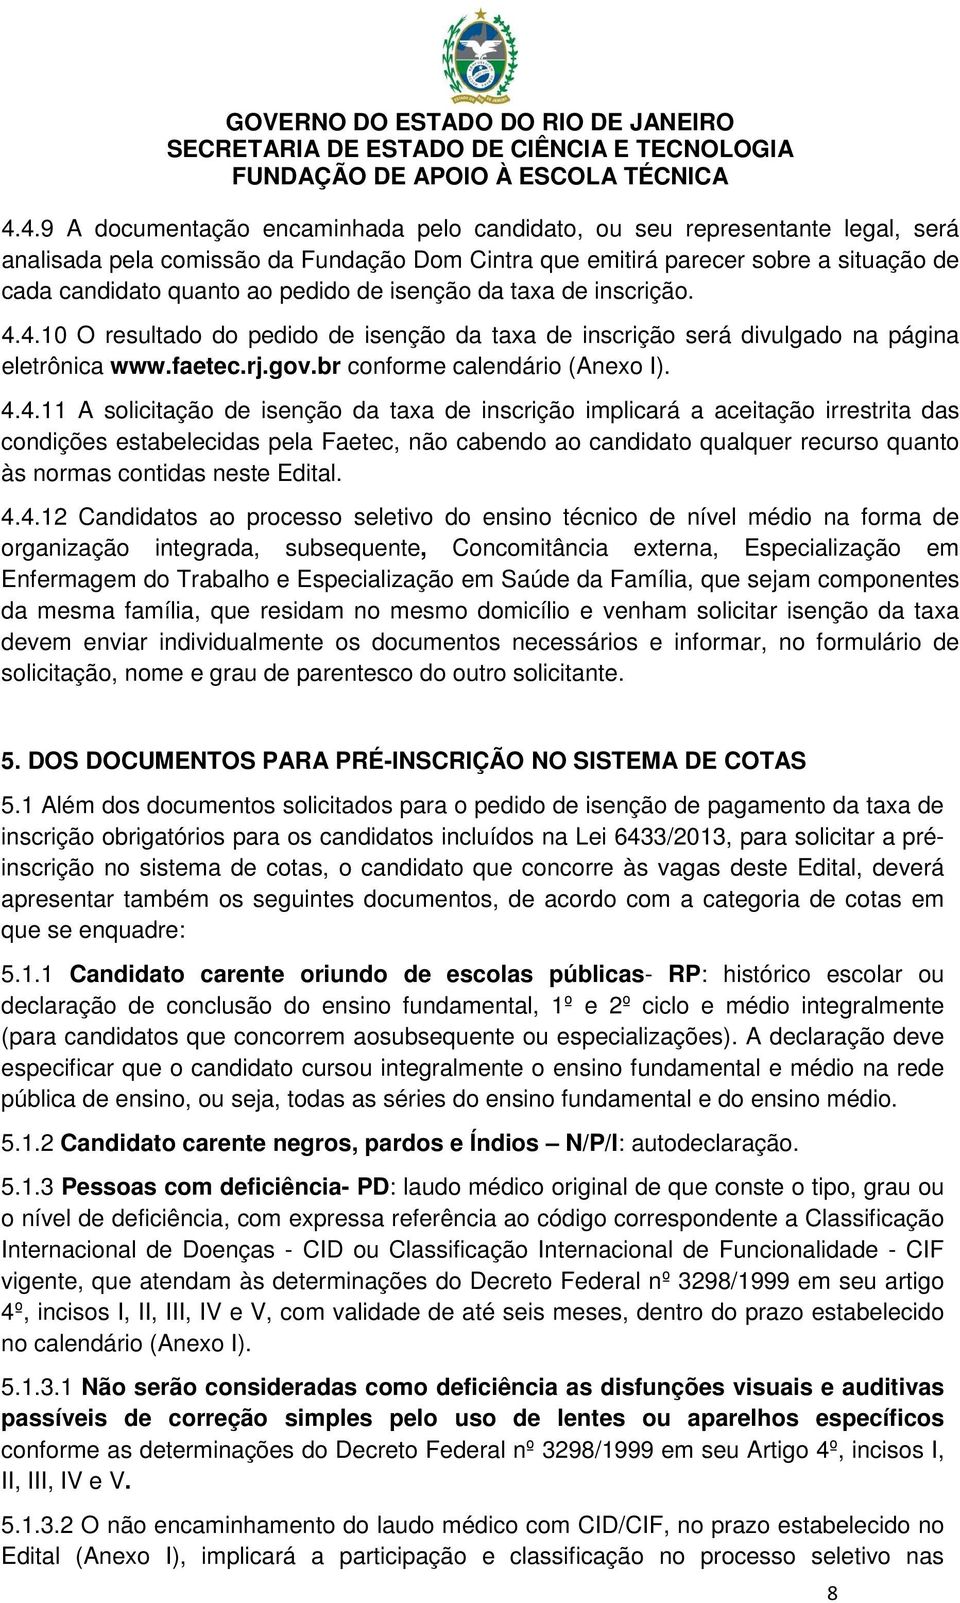 4.10 O resultado do pedido de isenção da taxa de inscrição será divulgado na página eletrônica www.faetec.rj.gov.br conforme calendário (Anexo I). 4.4.11 A solicitação de isenção da taxa de inscrição